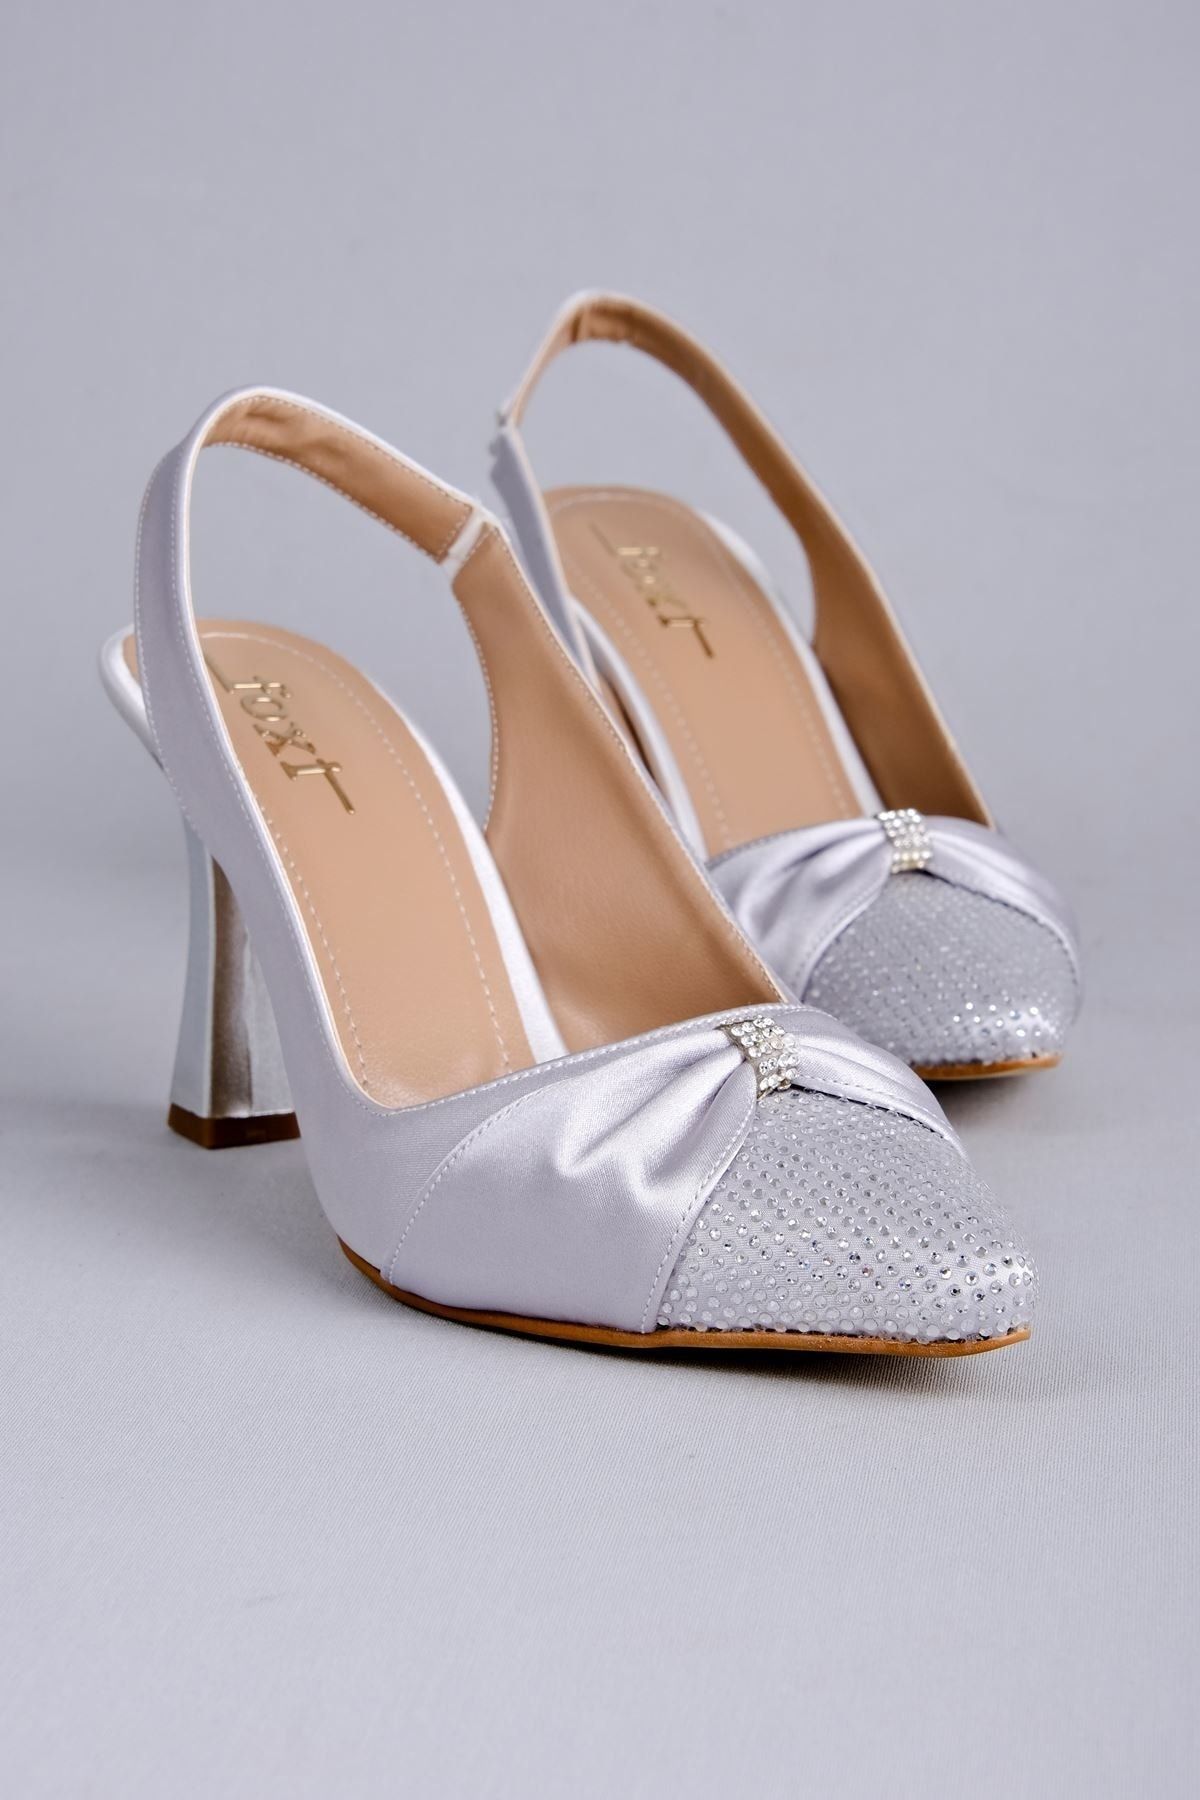 LAL SHOES & BAGS Kadın Topuklu Ayakkabı Kurdela-Ön Kısmı Taşlı-Gri